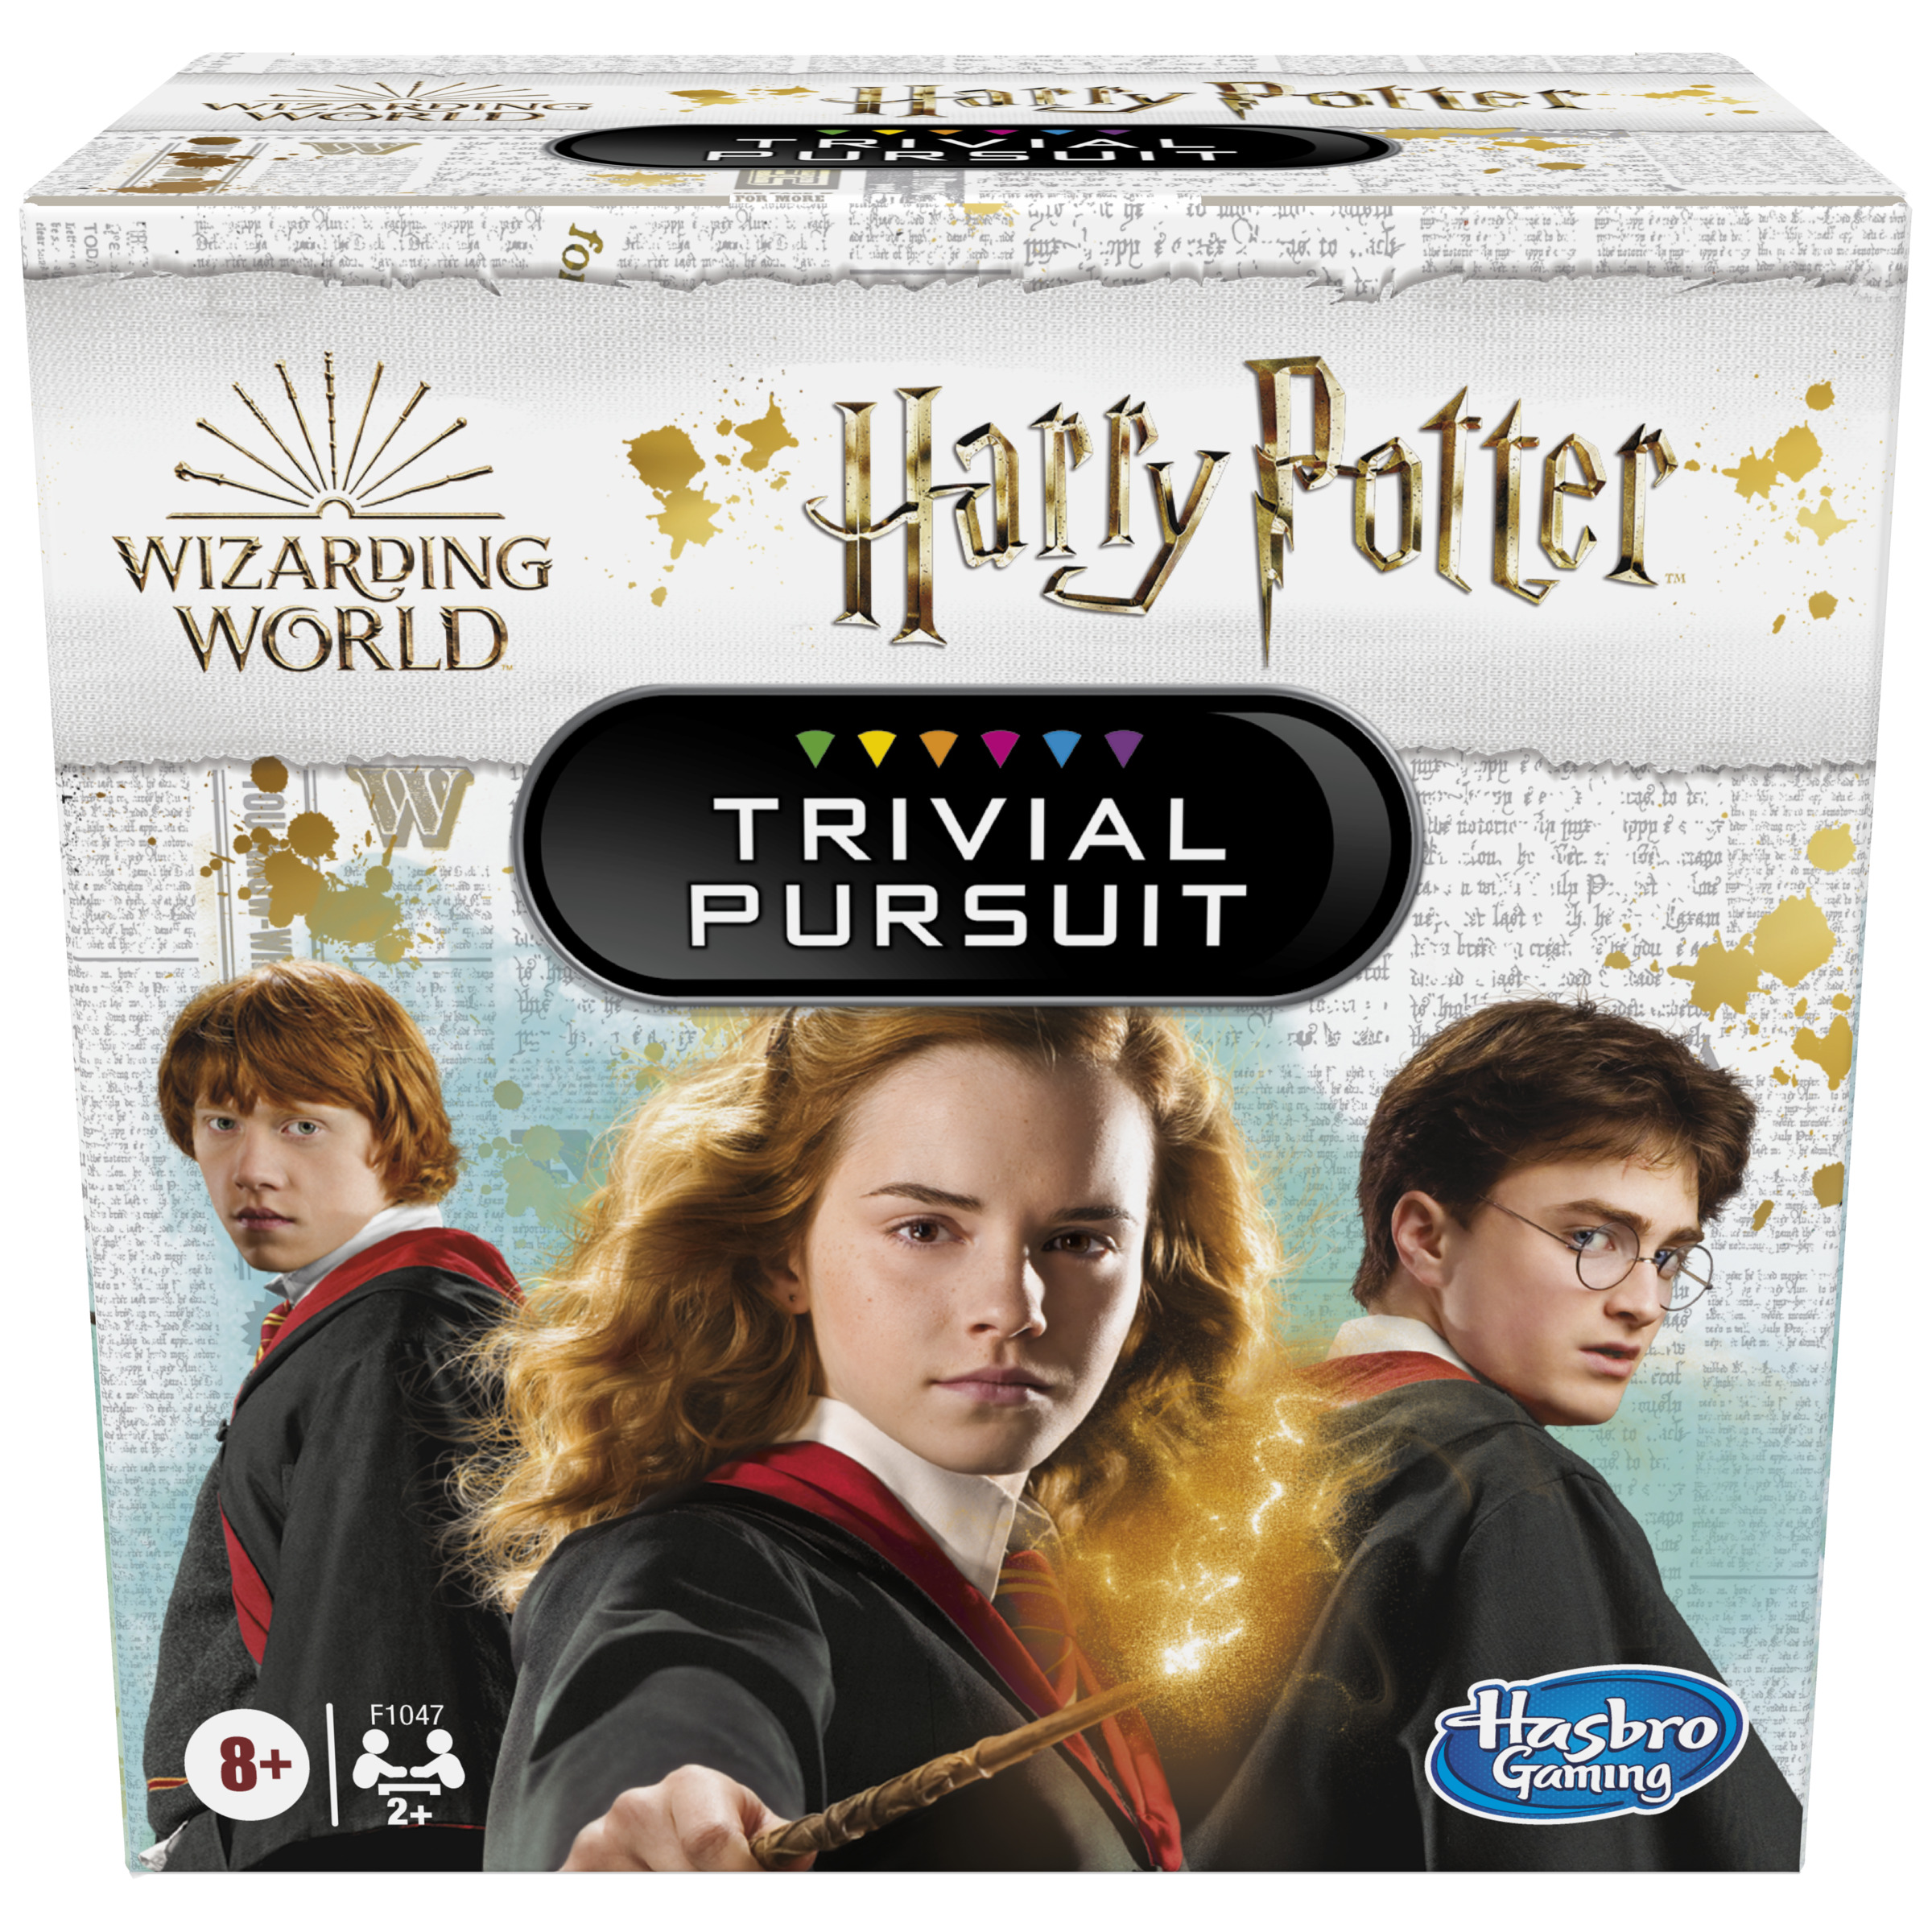 Hasbro - Trivial Pursuit Edición Harry Potter - En español - Wizarding World - Juego de mesa - Hasbro Gaming  - 8 AÑOS+